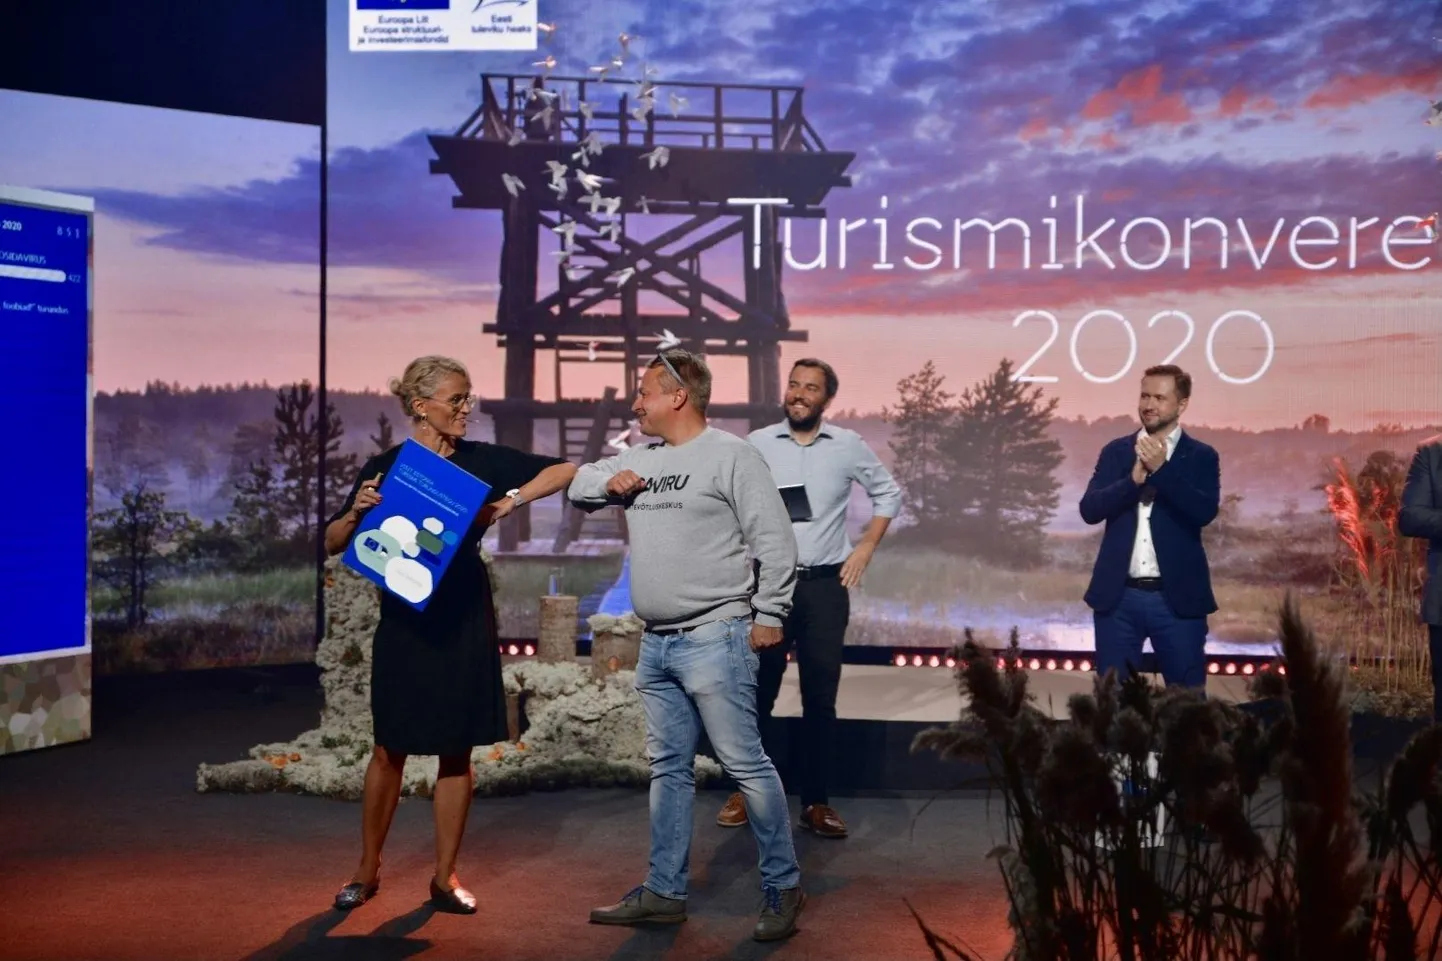 Ettevõtluse arendamise sihtasutuse turismiarenduskeskuse direktor Liina Maria Lepik annab üle auhinna, mille võtab vastu Ida-Viru turismiklastri esindaja Meelis Kuusk.